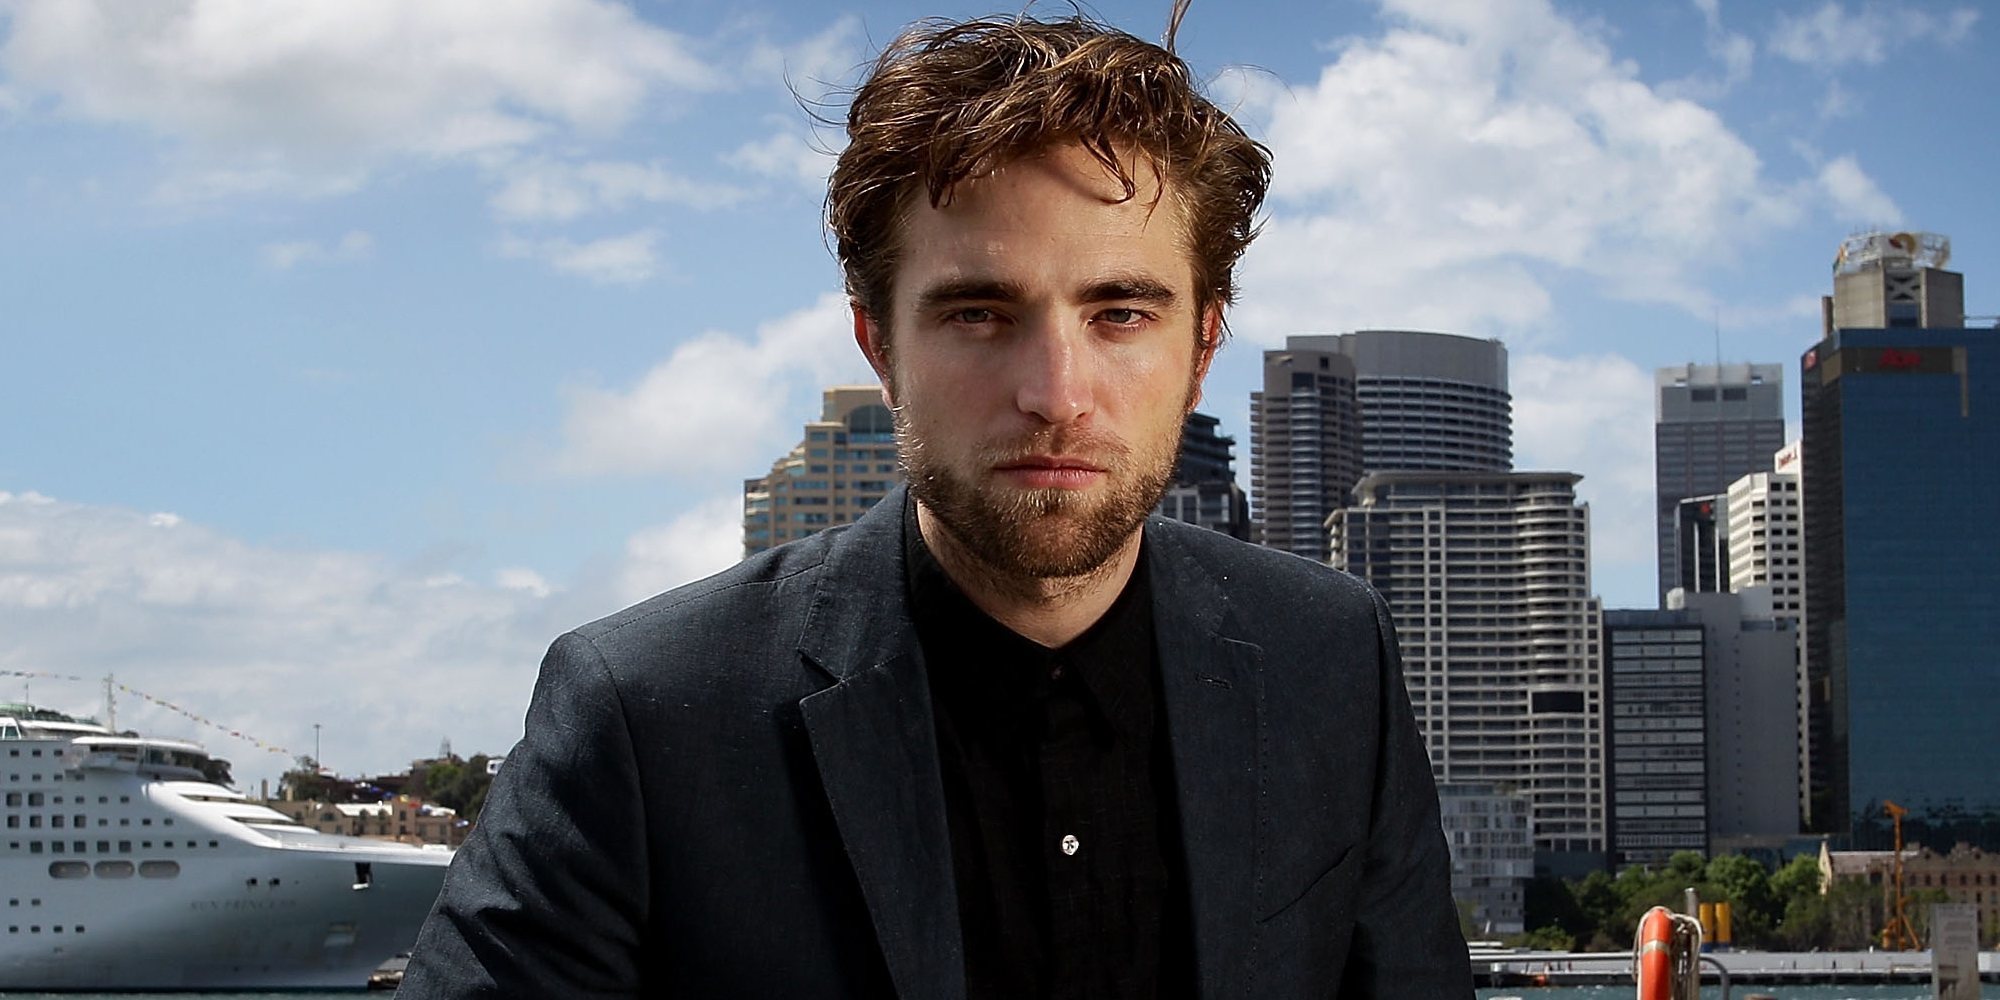 Robert Pattinson podría ser el nuevo Batman y suceder a Ben Affleck